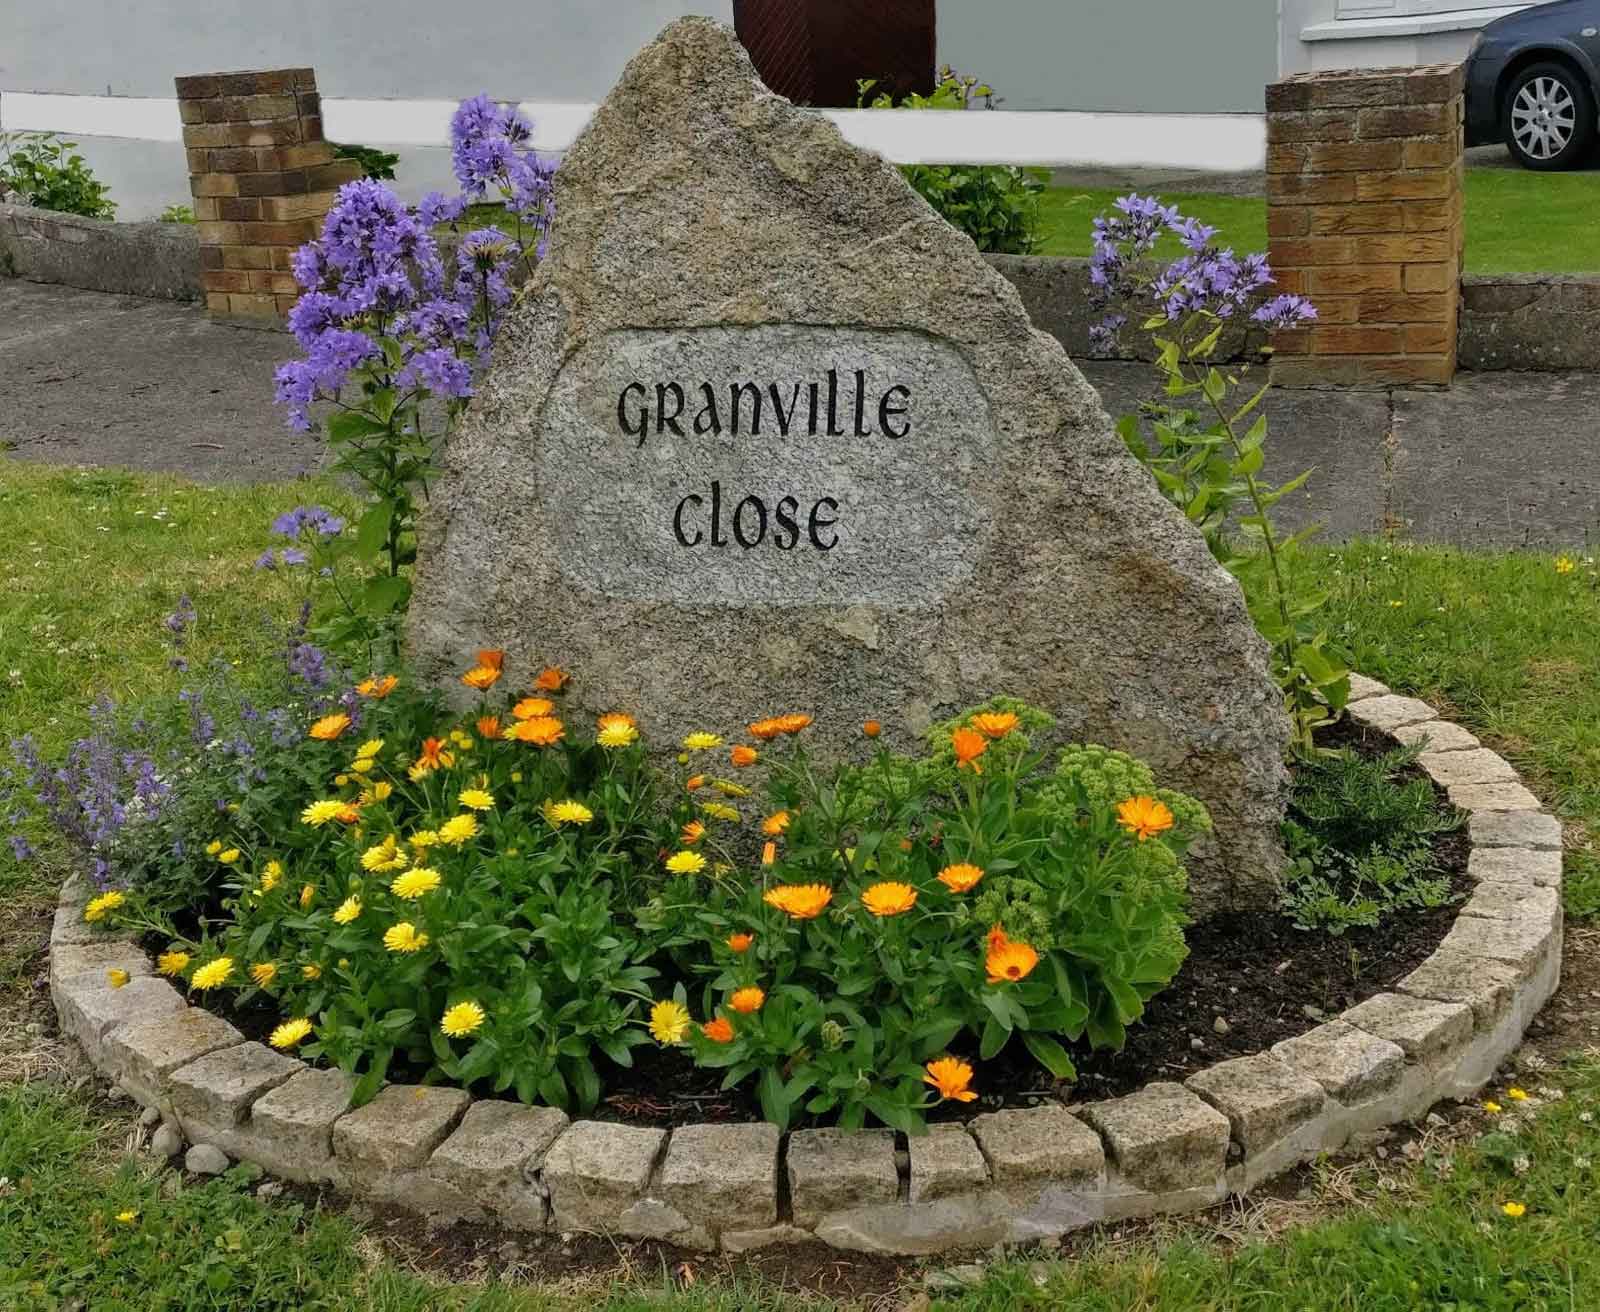 Granville Close name stone 2019